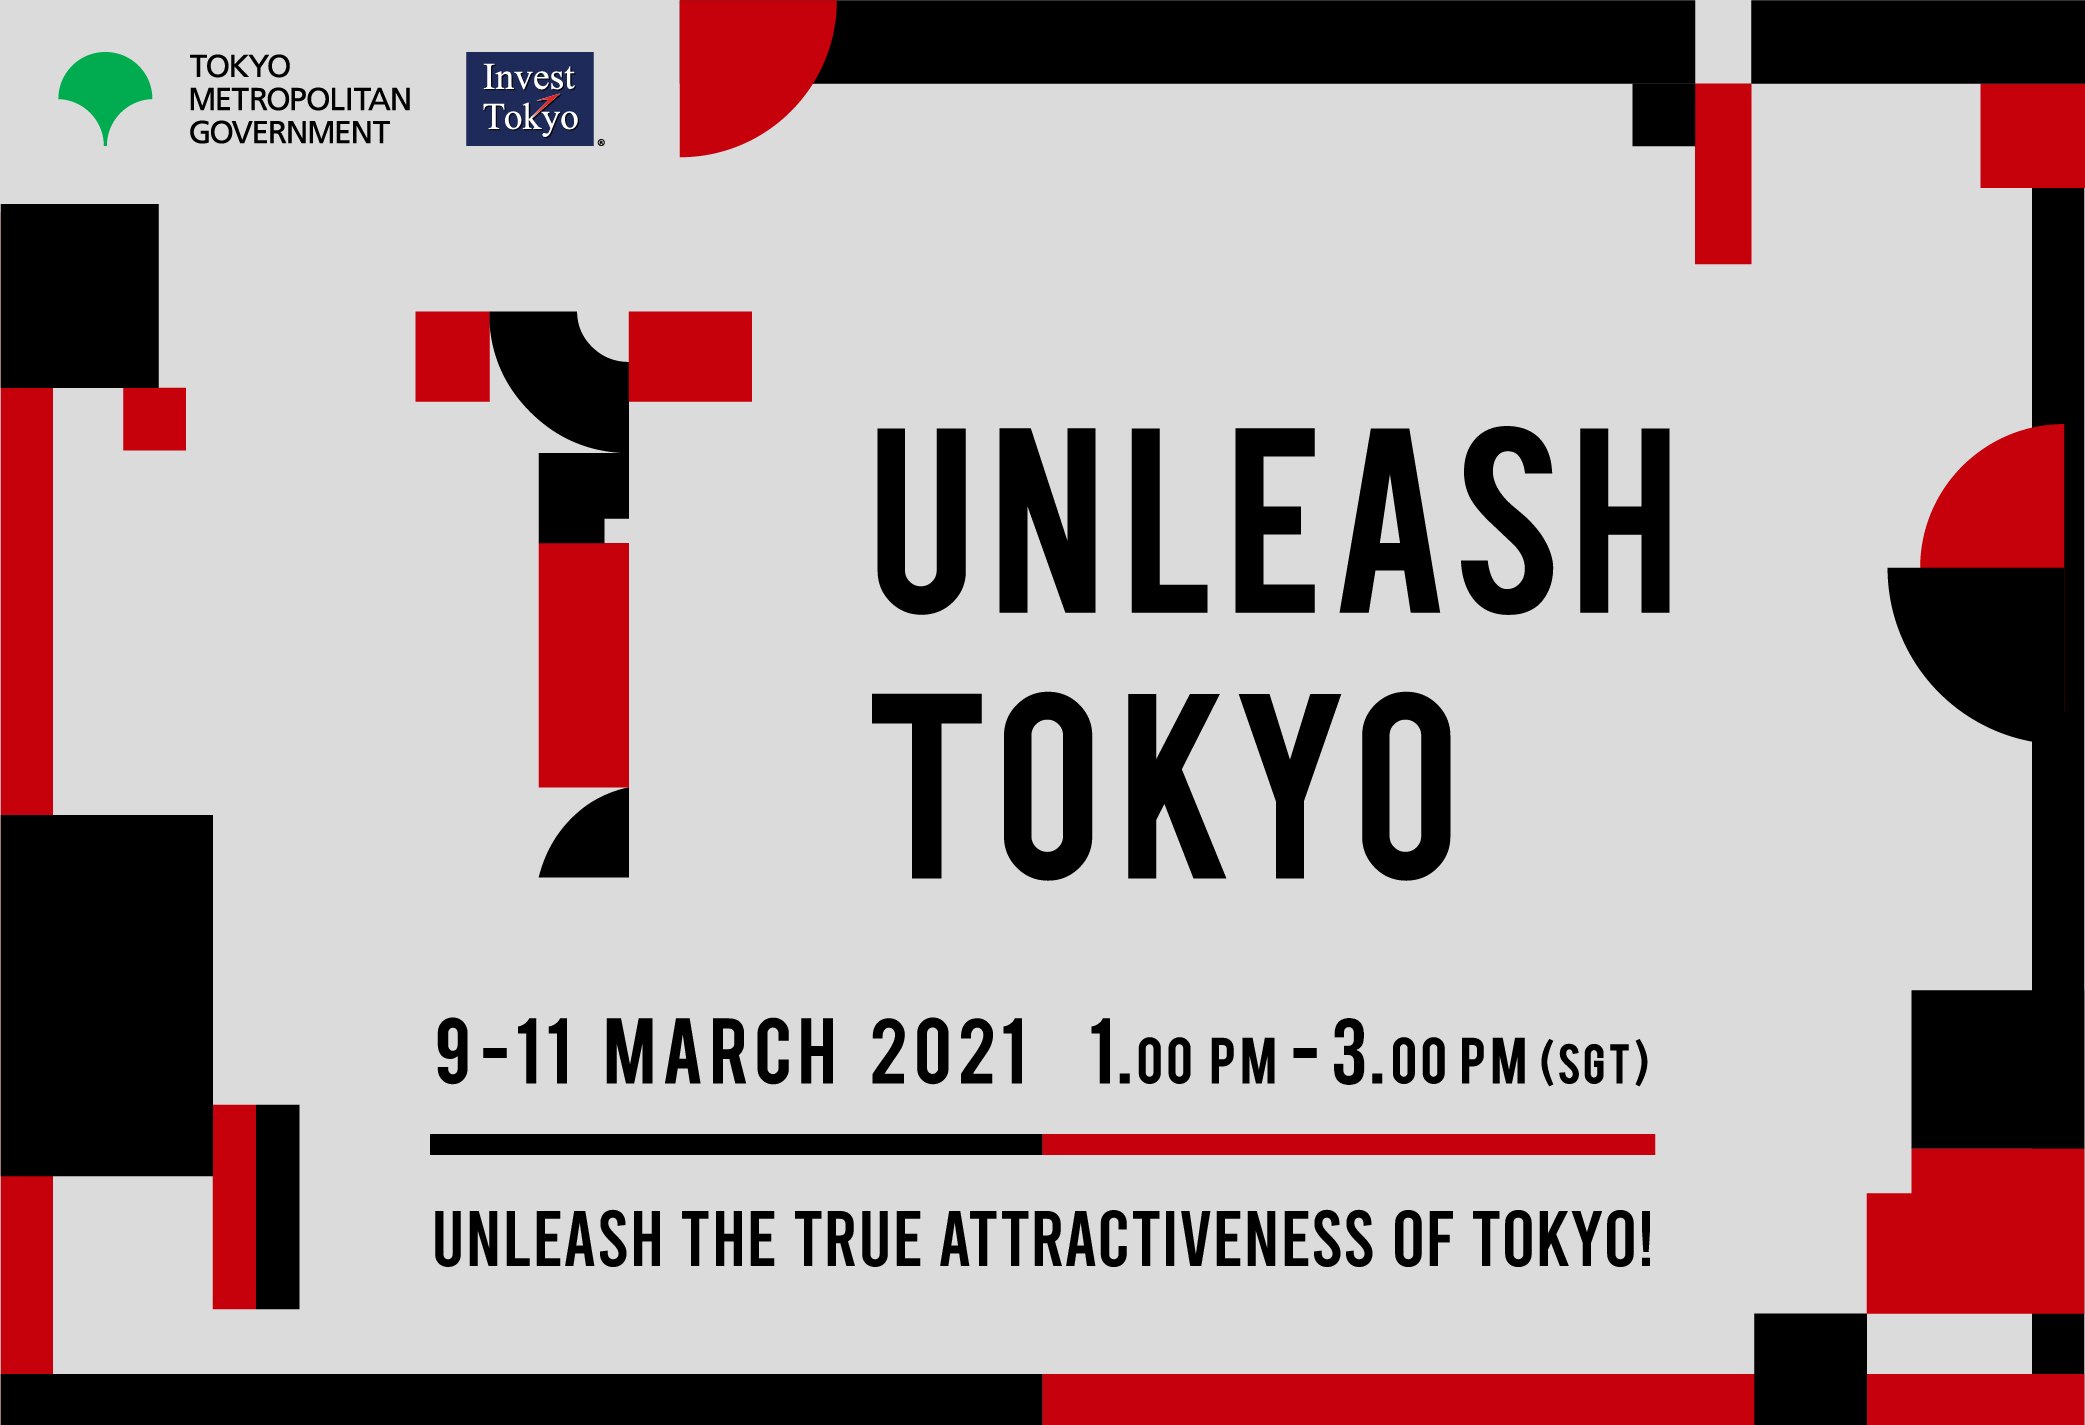 Uncut Gem Pt. IV: UNLEASH TOKYO Preview